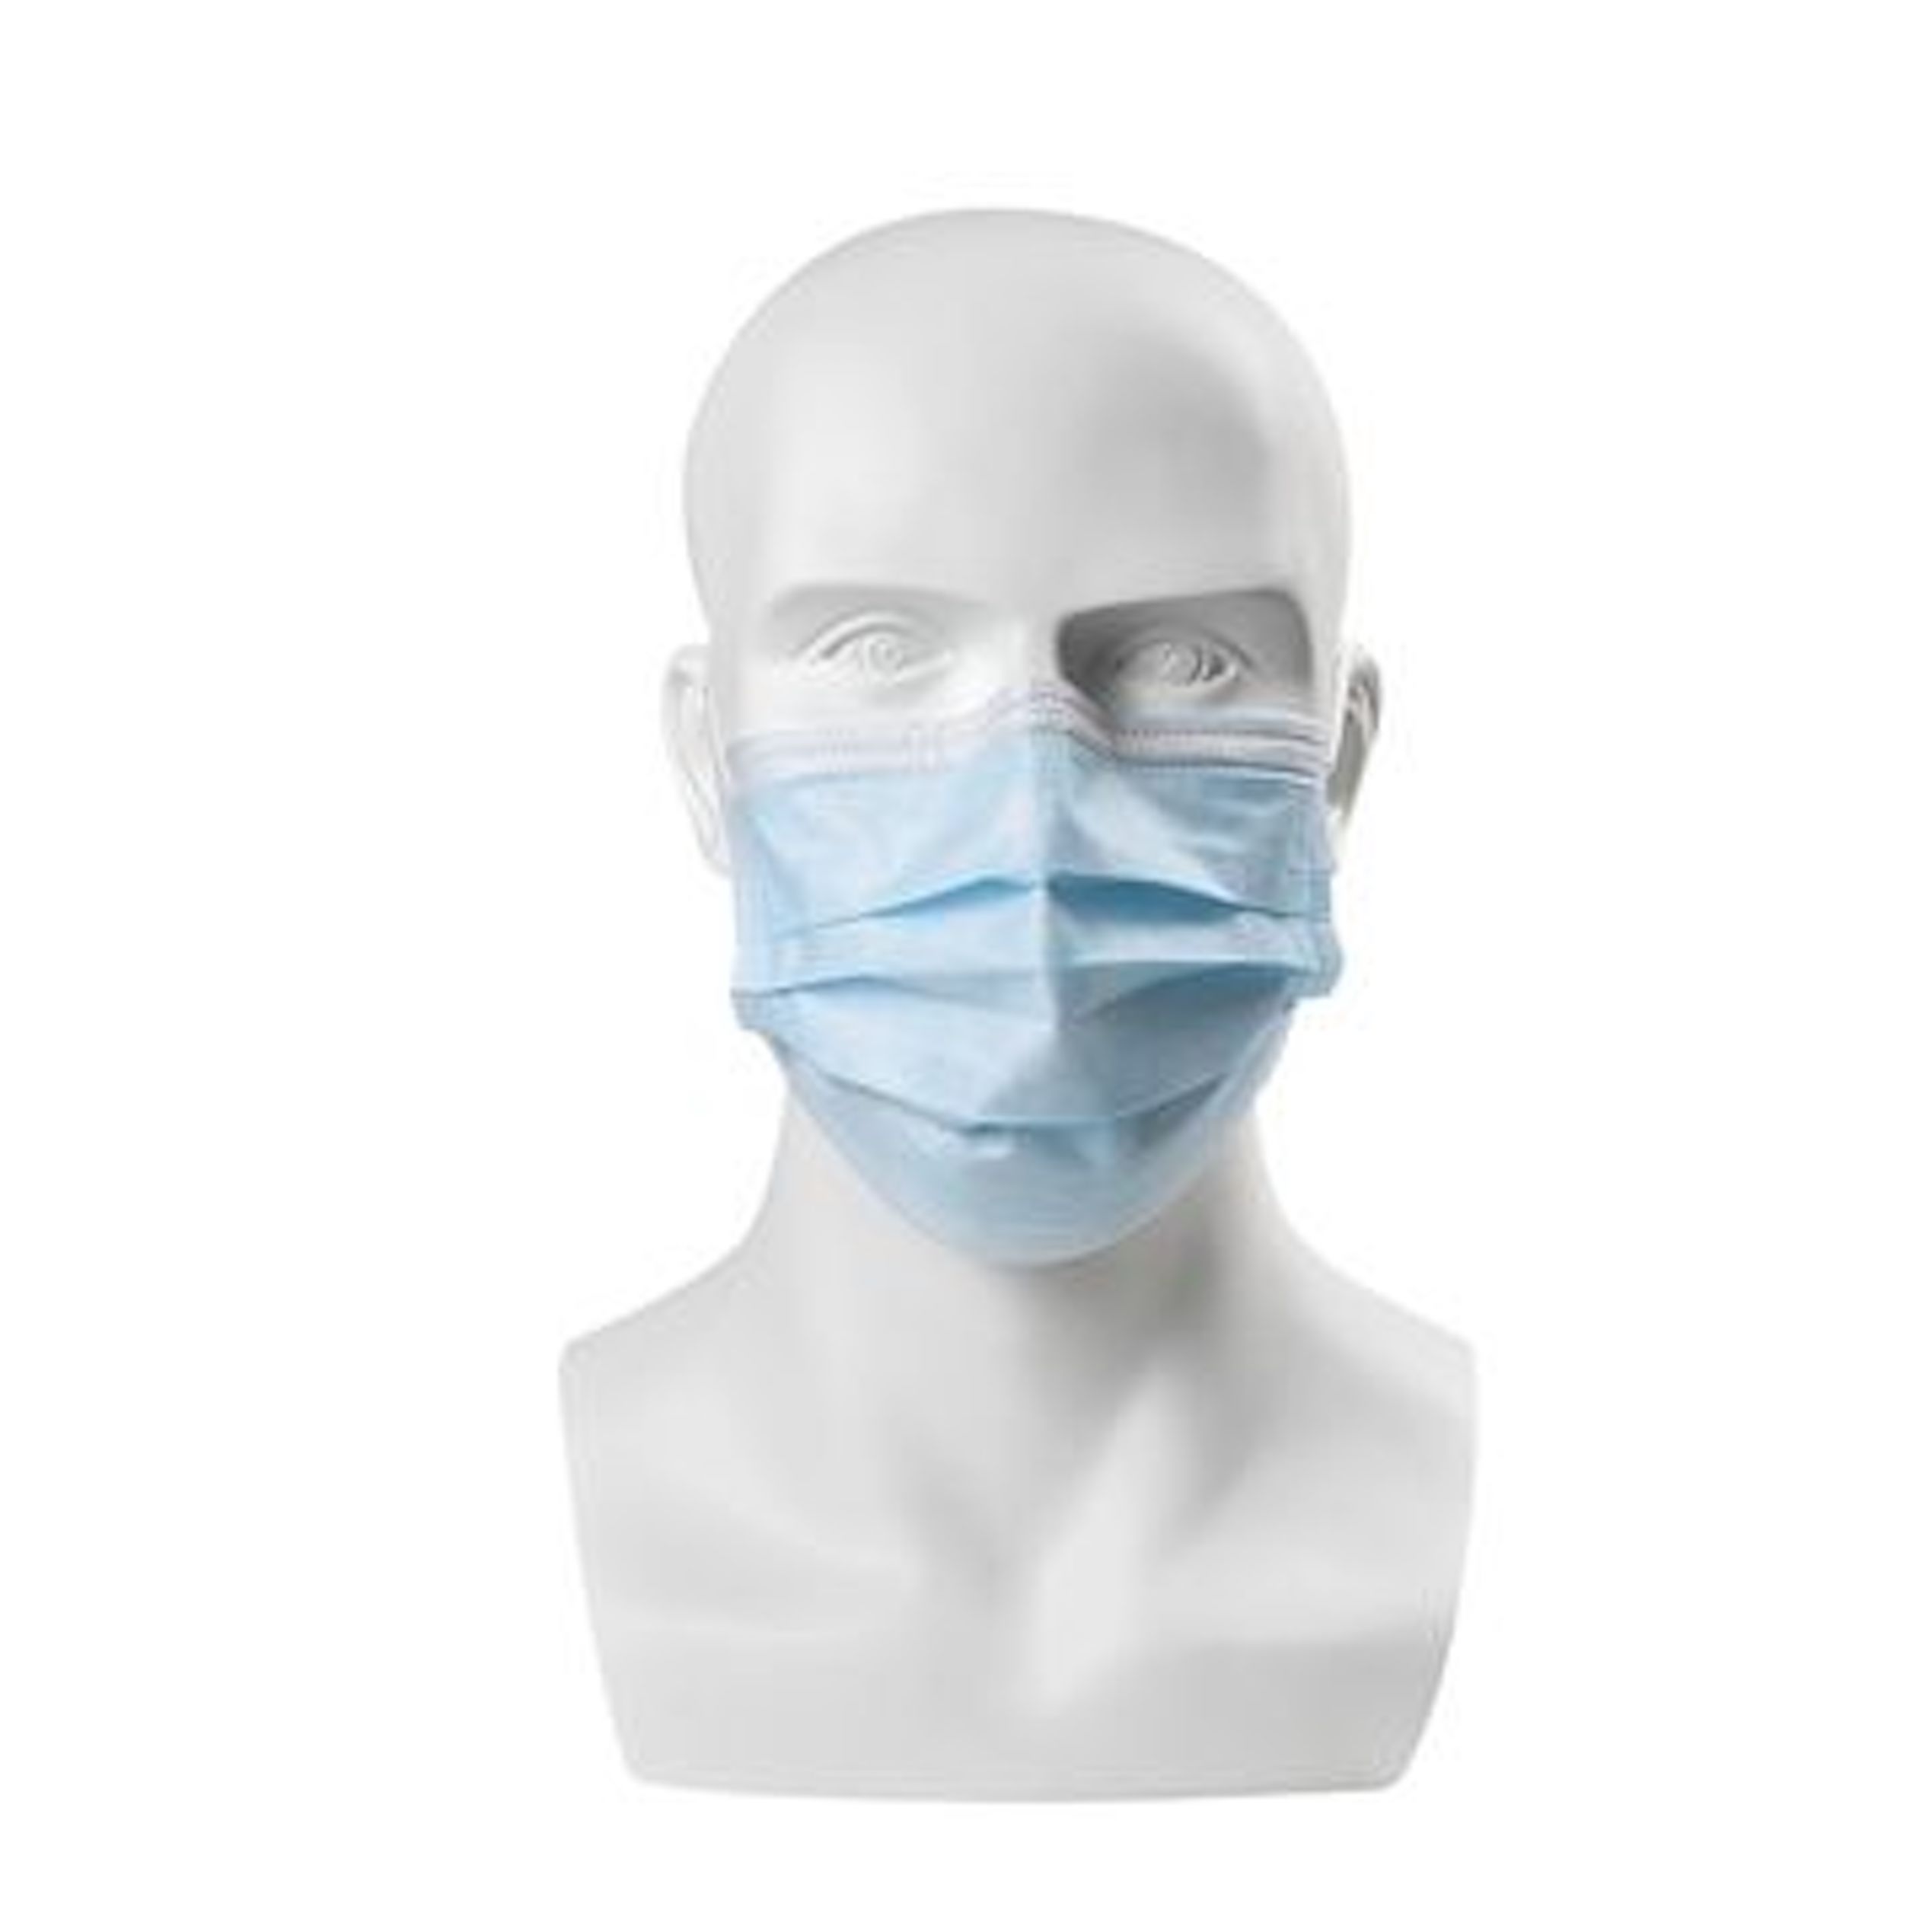 Маска купить рязань. Маски face Mask Disposable. Surgical Mask 3ply. Маски лицевые одноразовые. Хирургическая маска для лица.